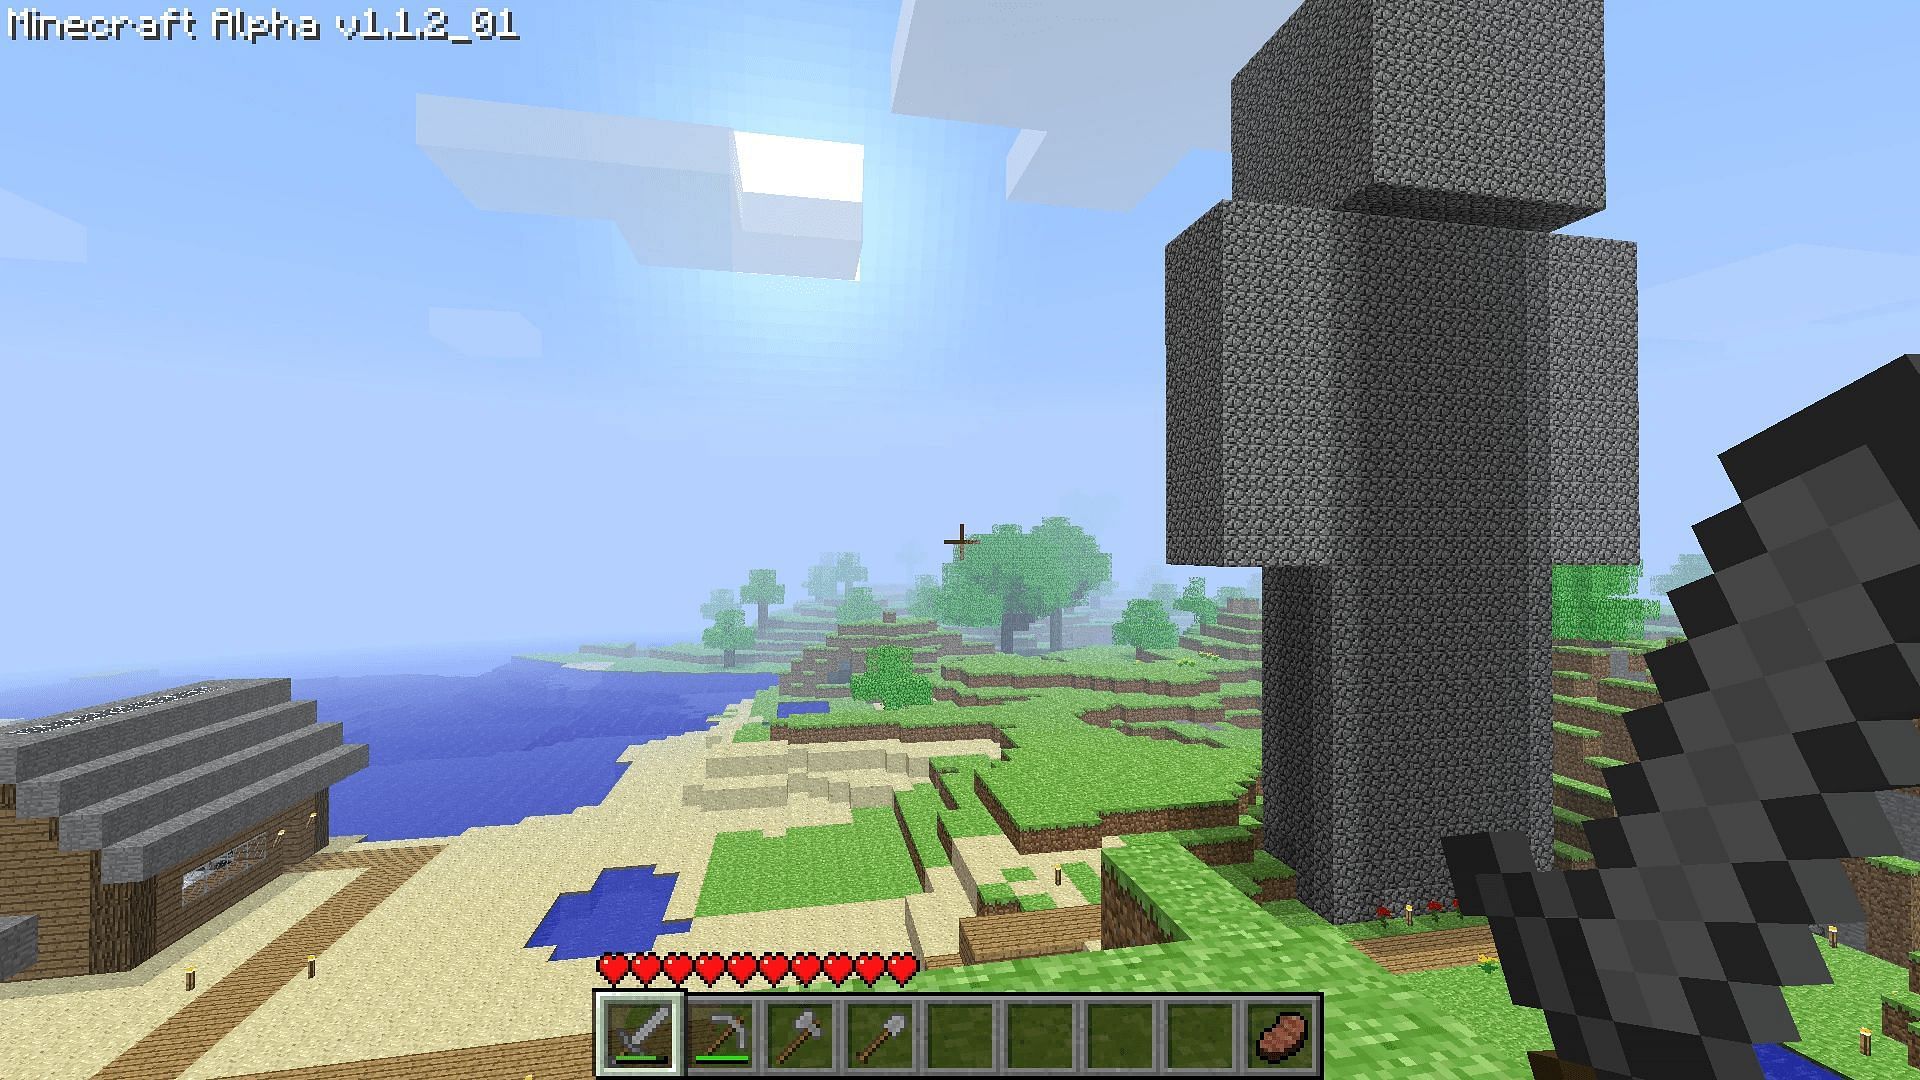 A screenshot from Minecraft